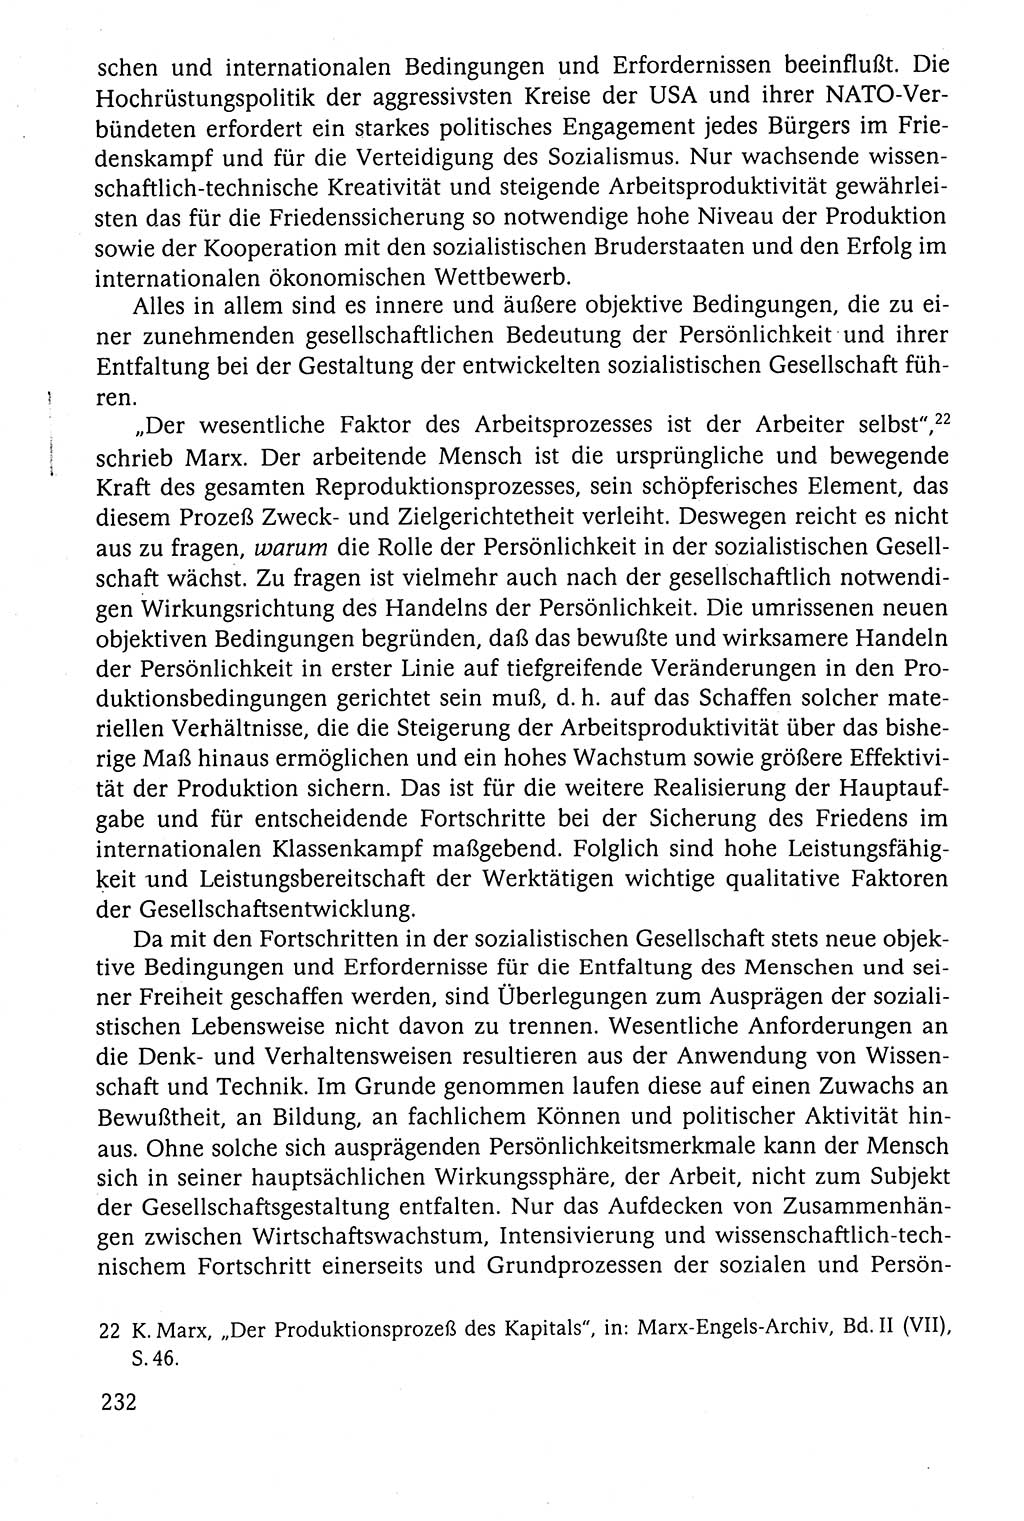 Der Staat im politischen System der DDR (Deutsche Demokratische Republik) 1986, Seite 232 (St. pol. Sys. DDR 1986, S. 232)